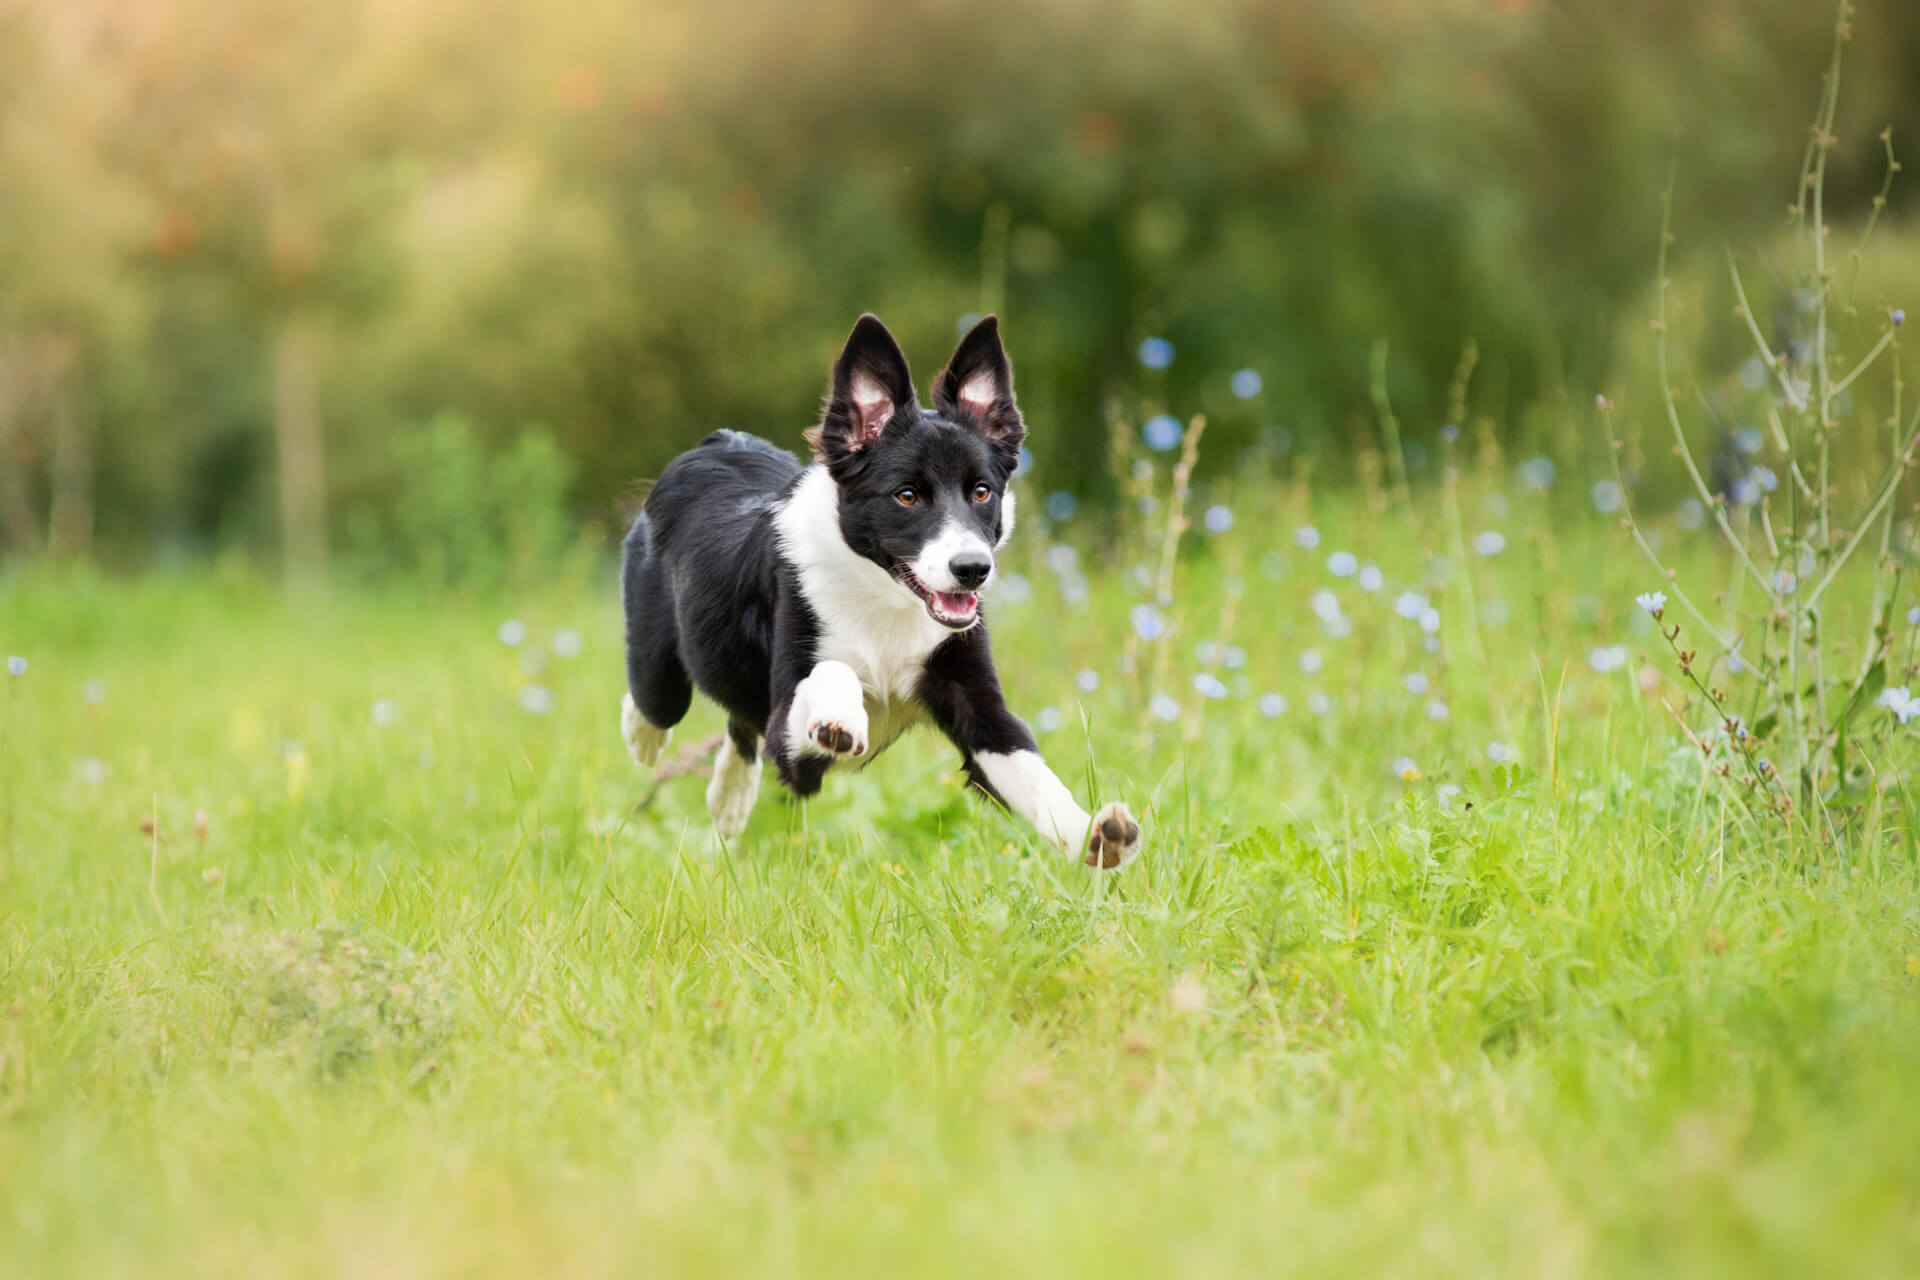 chien noir et blanc fugueur dans un champ